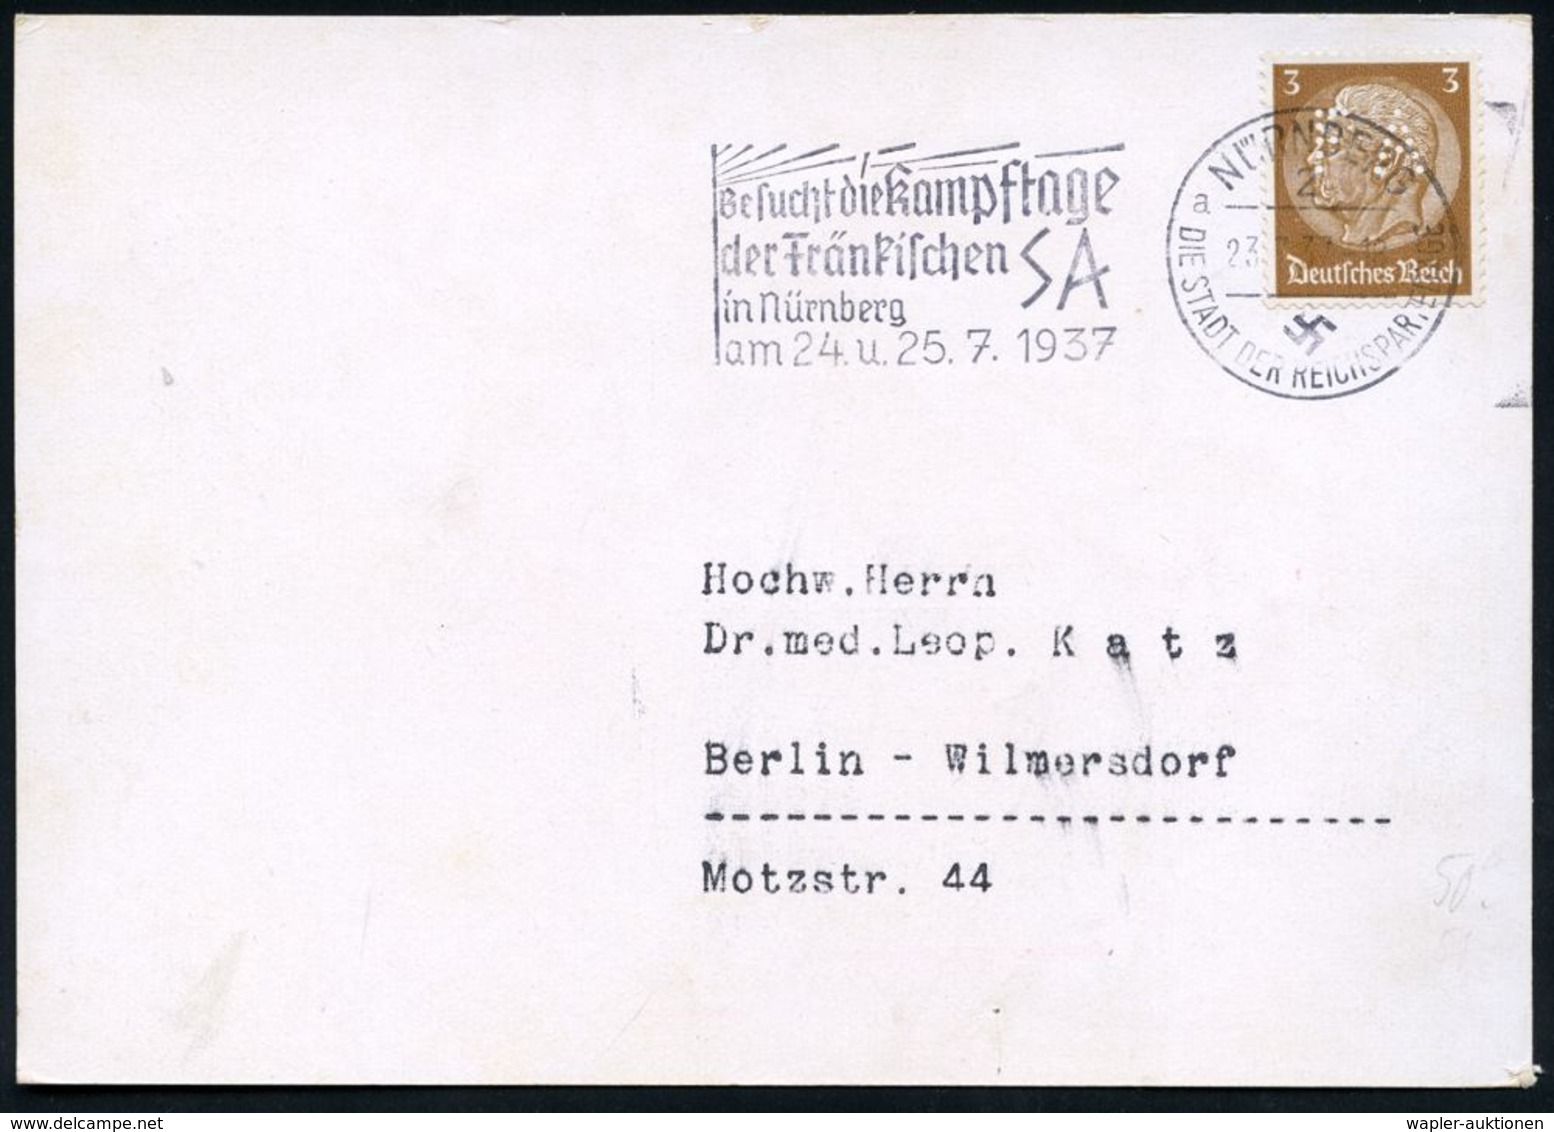 CHEMIE / PRODUKTE / CHEMISCHE INDUSTRIE : NÜRNBERG/ 2/ A/ DSDR/ Besucht Die Kampftage/ Der Fränkischen S A.. 1937 (23.7. - Chimie